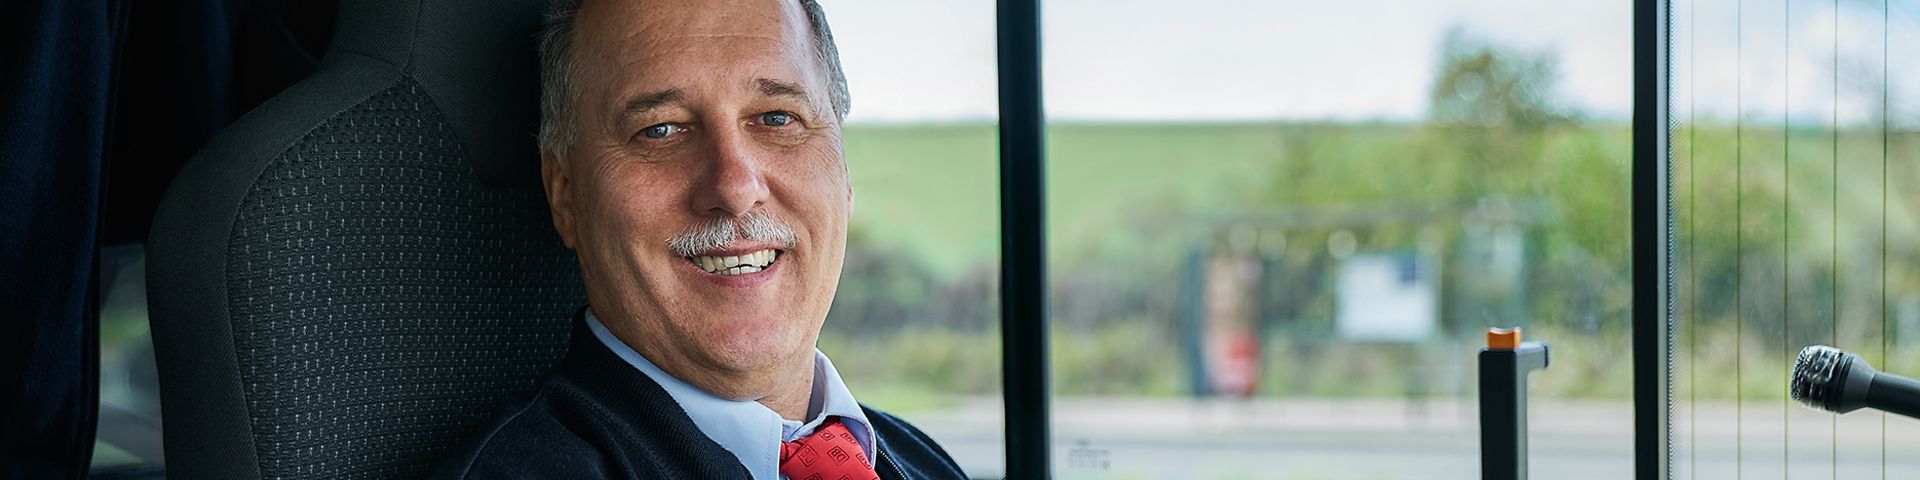 Ein Busfahrer sitzt lächelnd auf dem Fahrersitz eines Busses